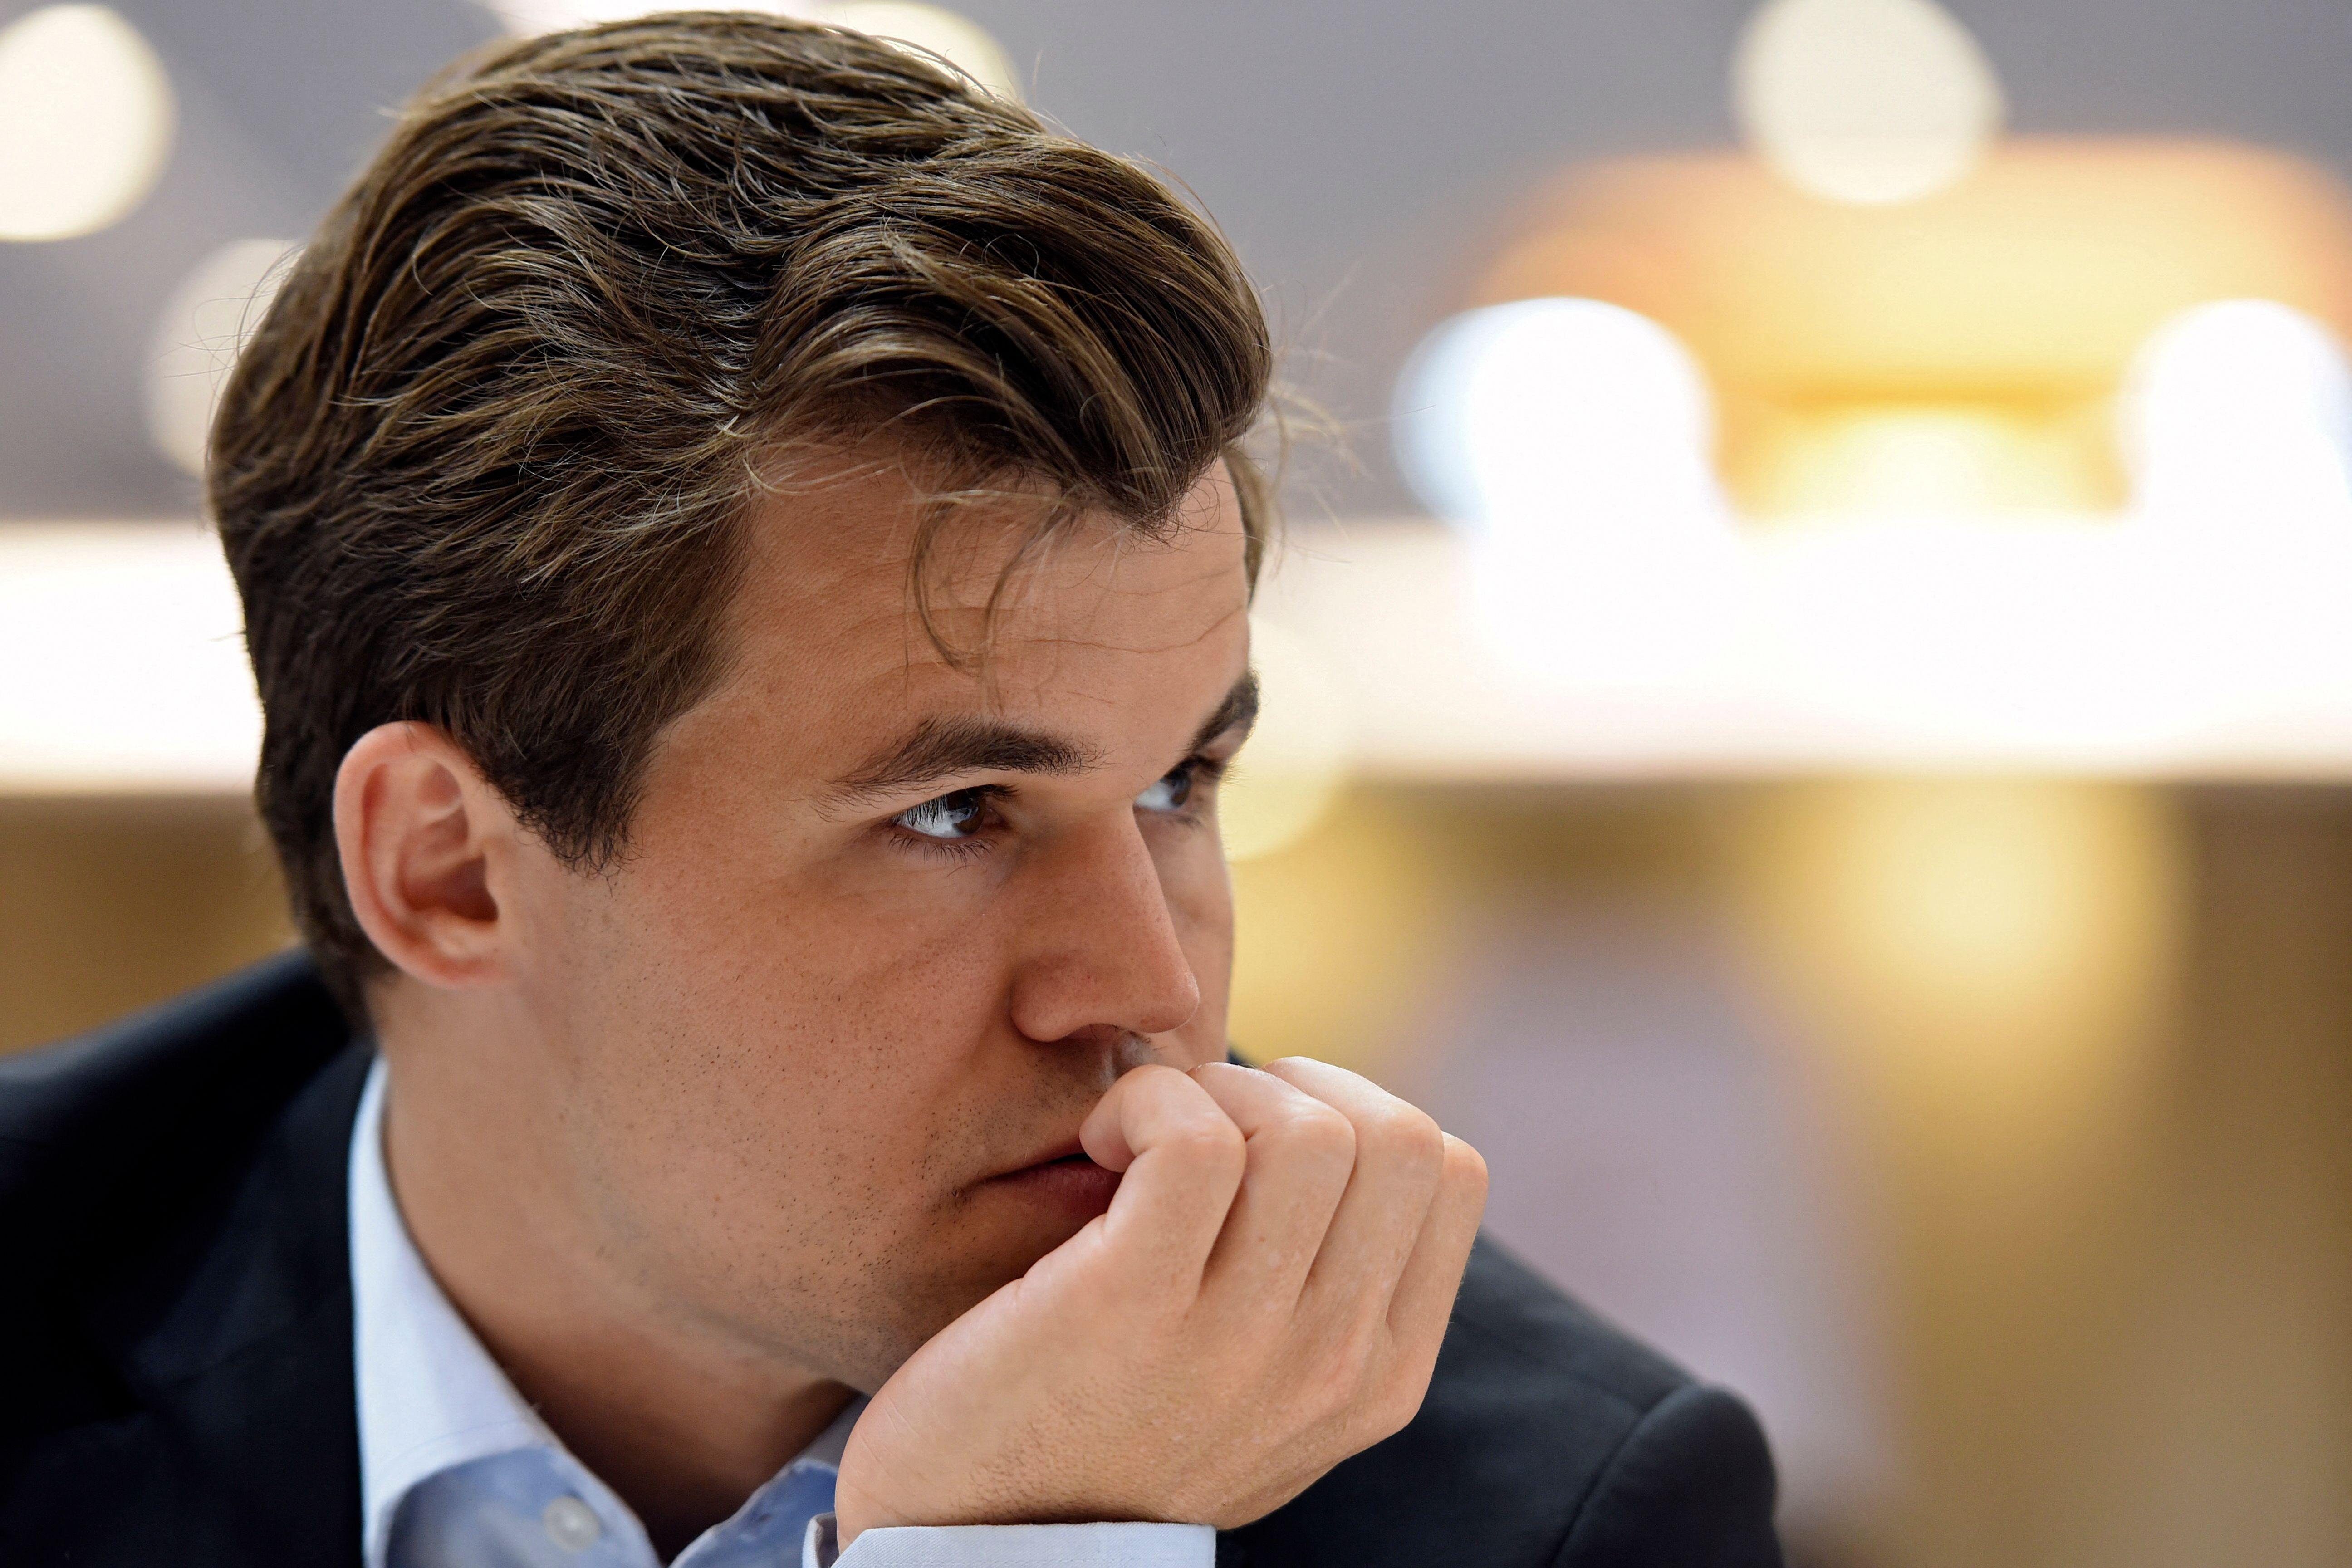 Ex-campeão mundial de xadrez, Magnus Carlsen fala sobre poker